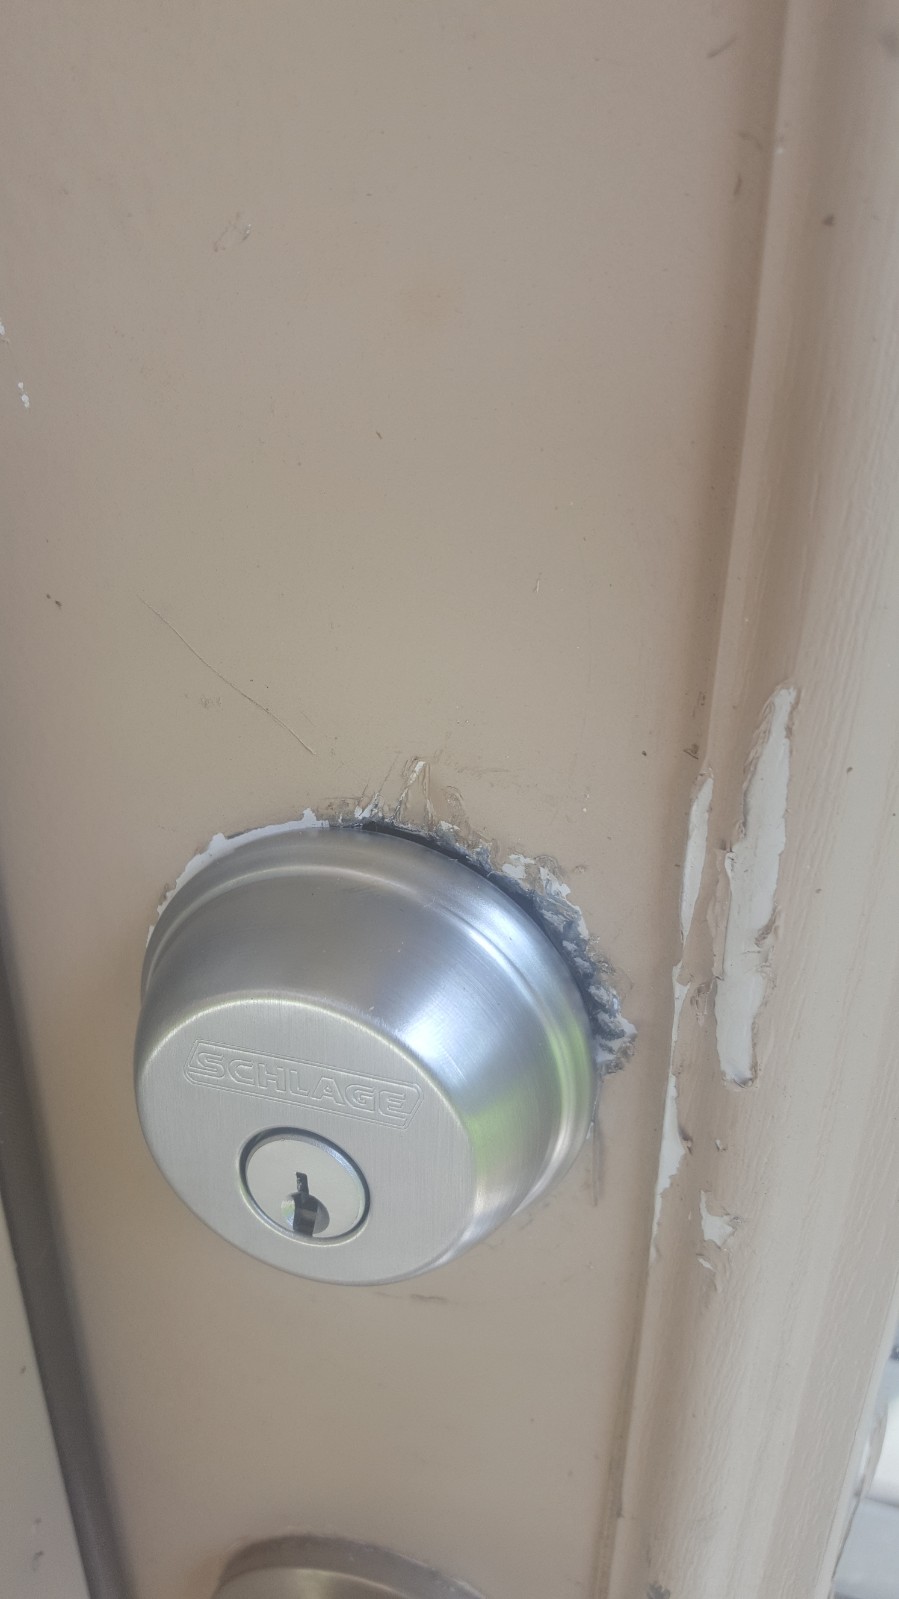 pic of new back door lock and door damage #3